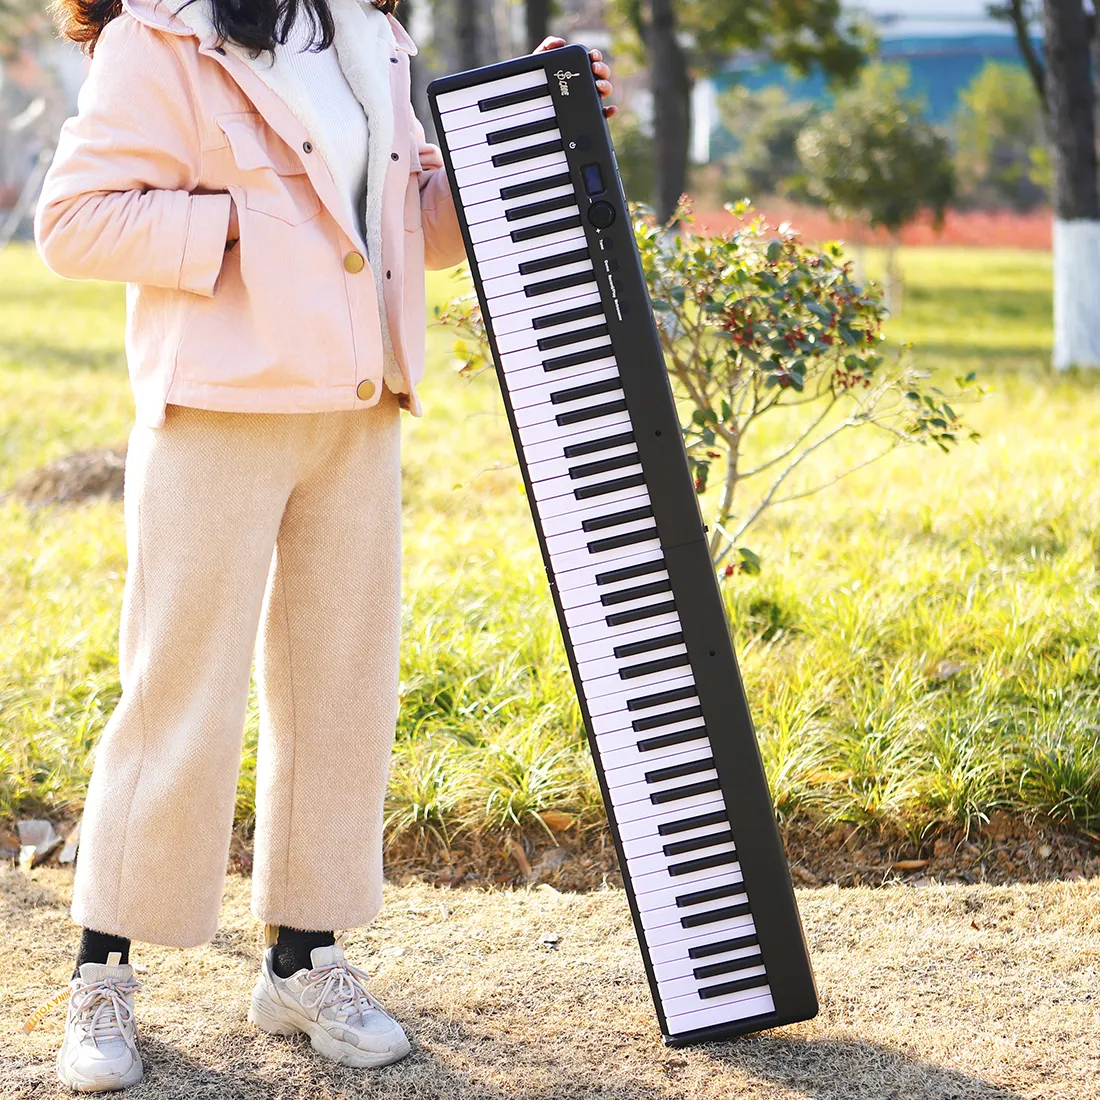 SLADE-instrumento de música digital, teclado electrónico de piano de empalme plegable portátil, 88 teclas, blanco y negro, gran oferta, venta al por mayor